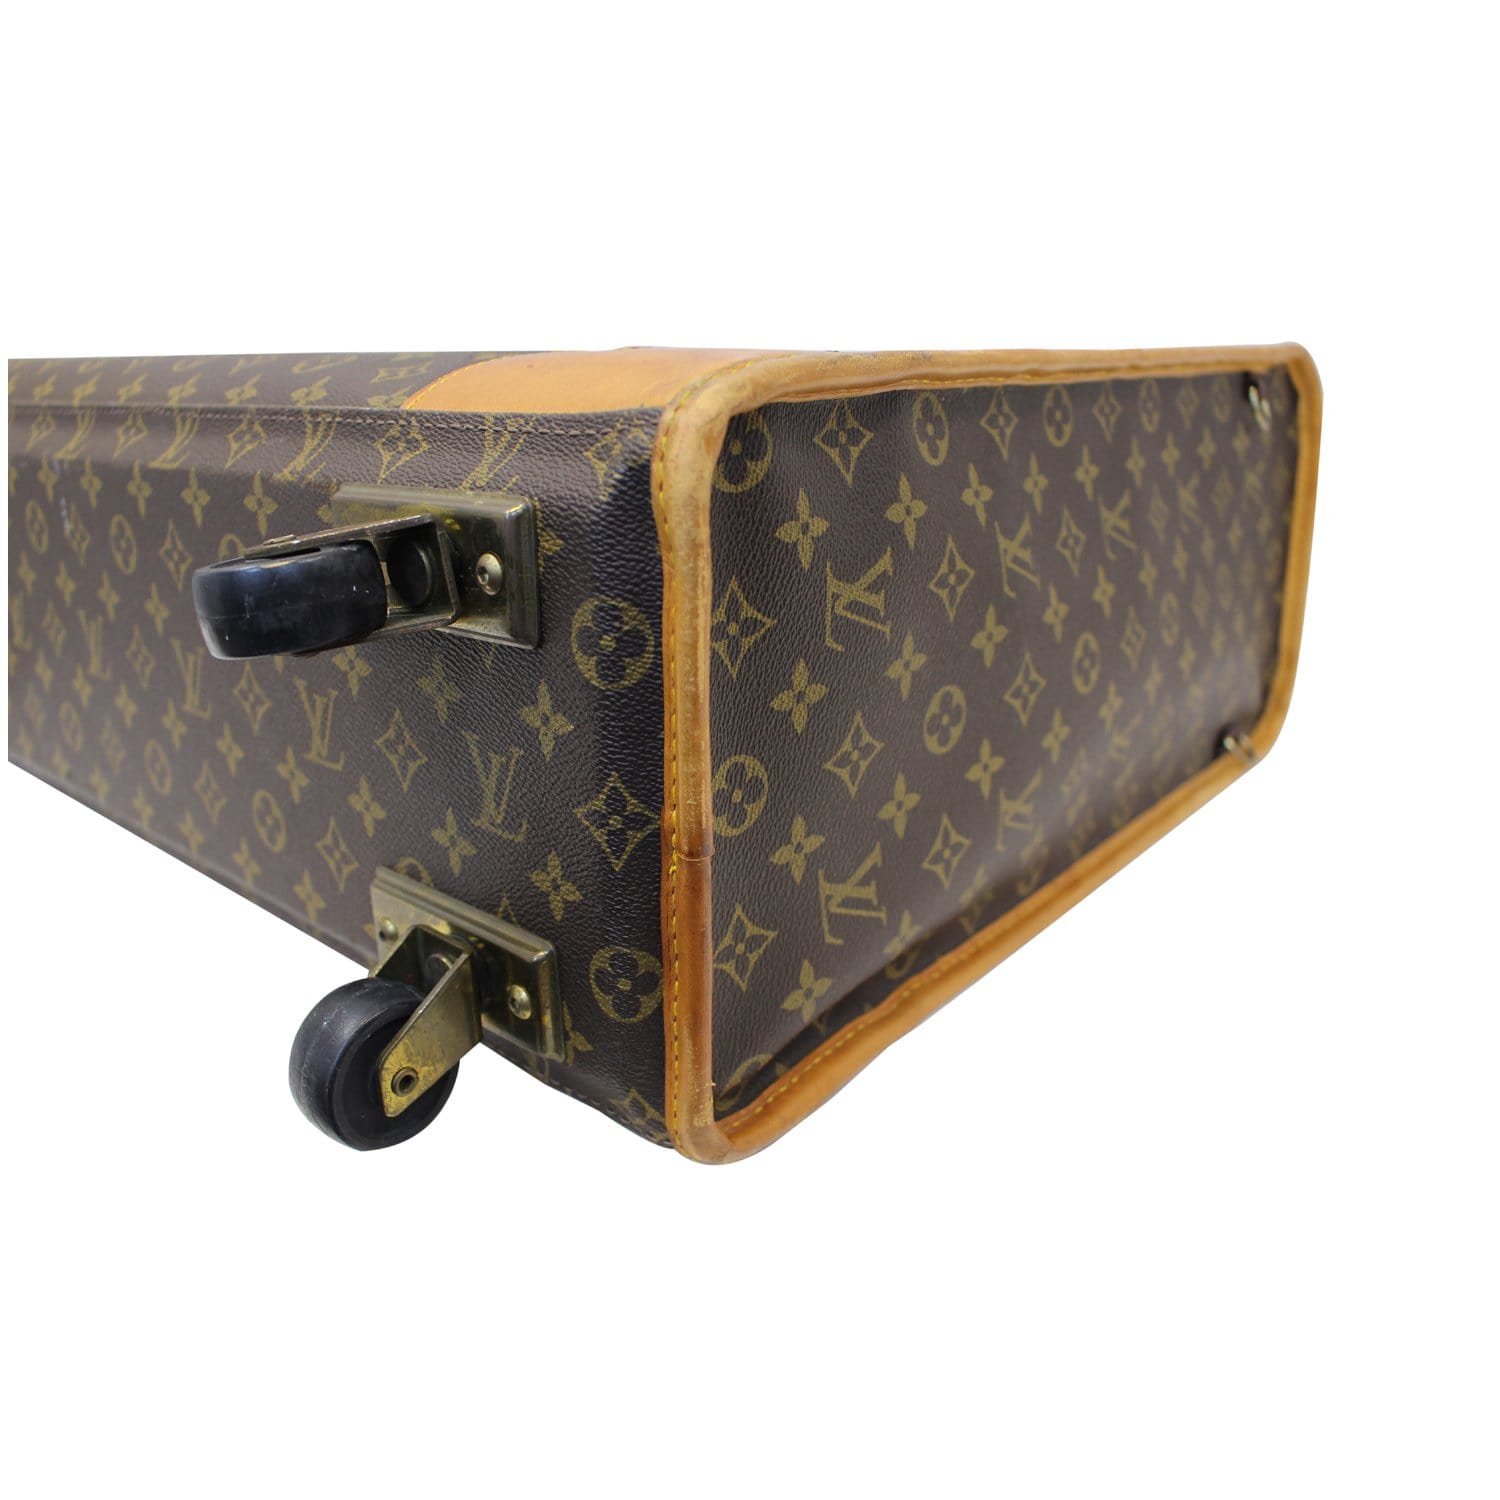 OBJ file Louis Vuitton bag, suitcase, case・3D print design to download・Cults